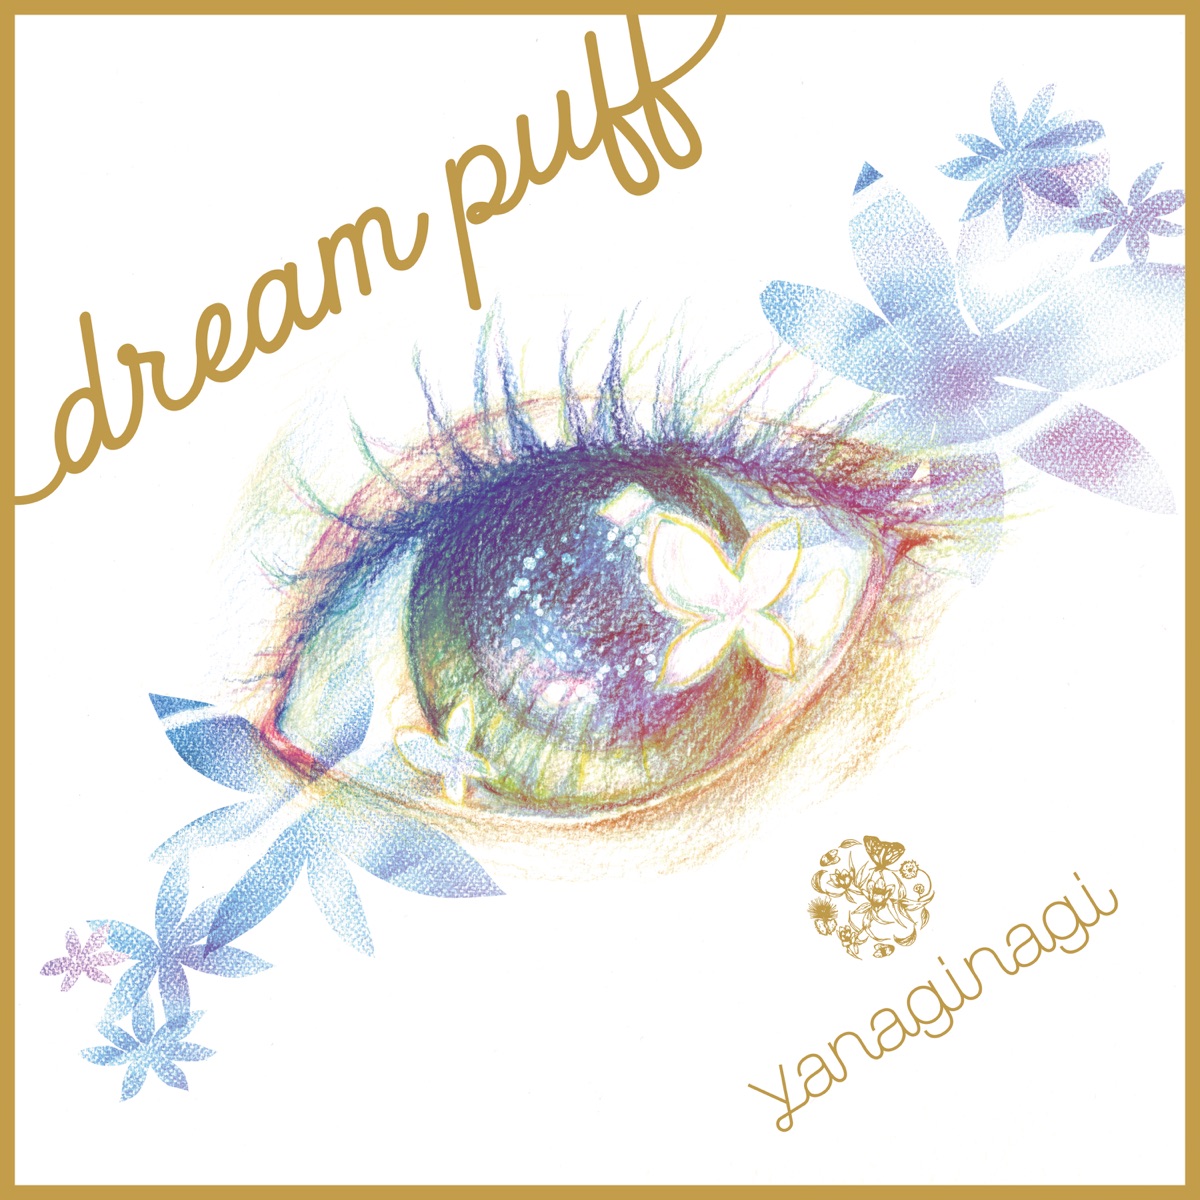 『やなぎなぎ - dream puff』収録の『dream puff』ジャケット